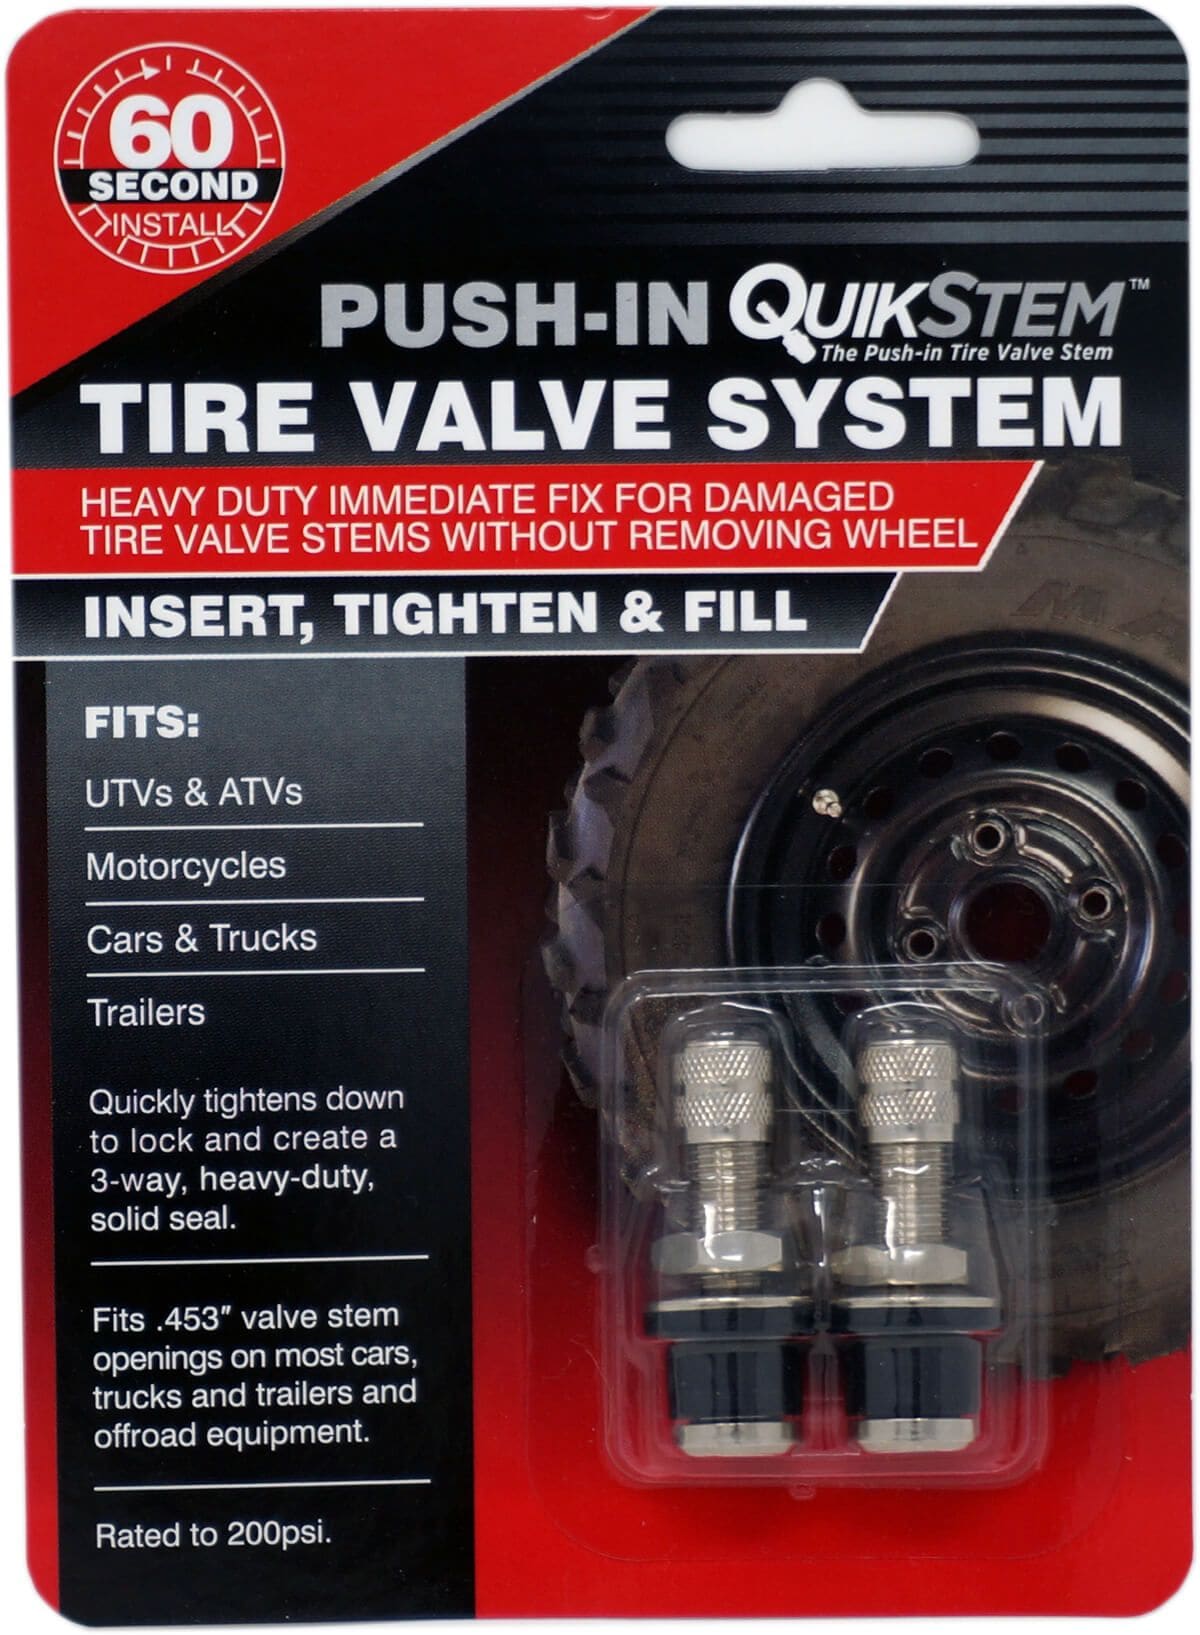 QuikStem - Replace Broken Tire Valve Stems in 60 seconds - No Need to Break  the Bead